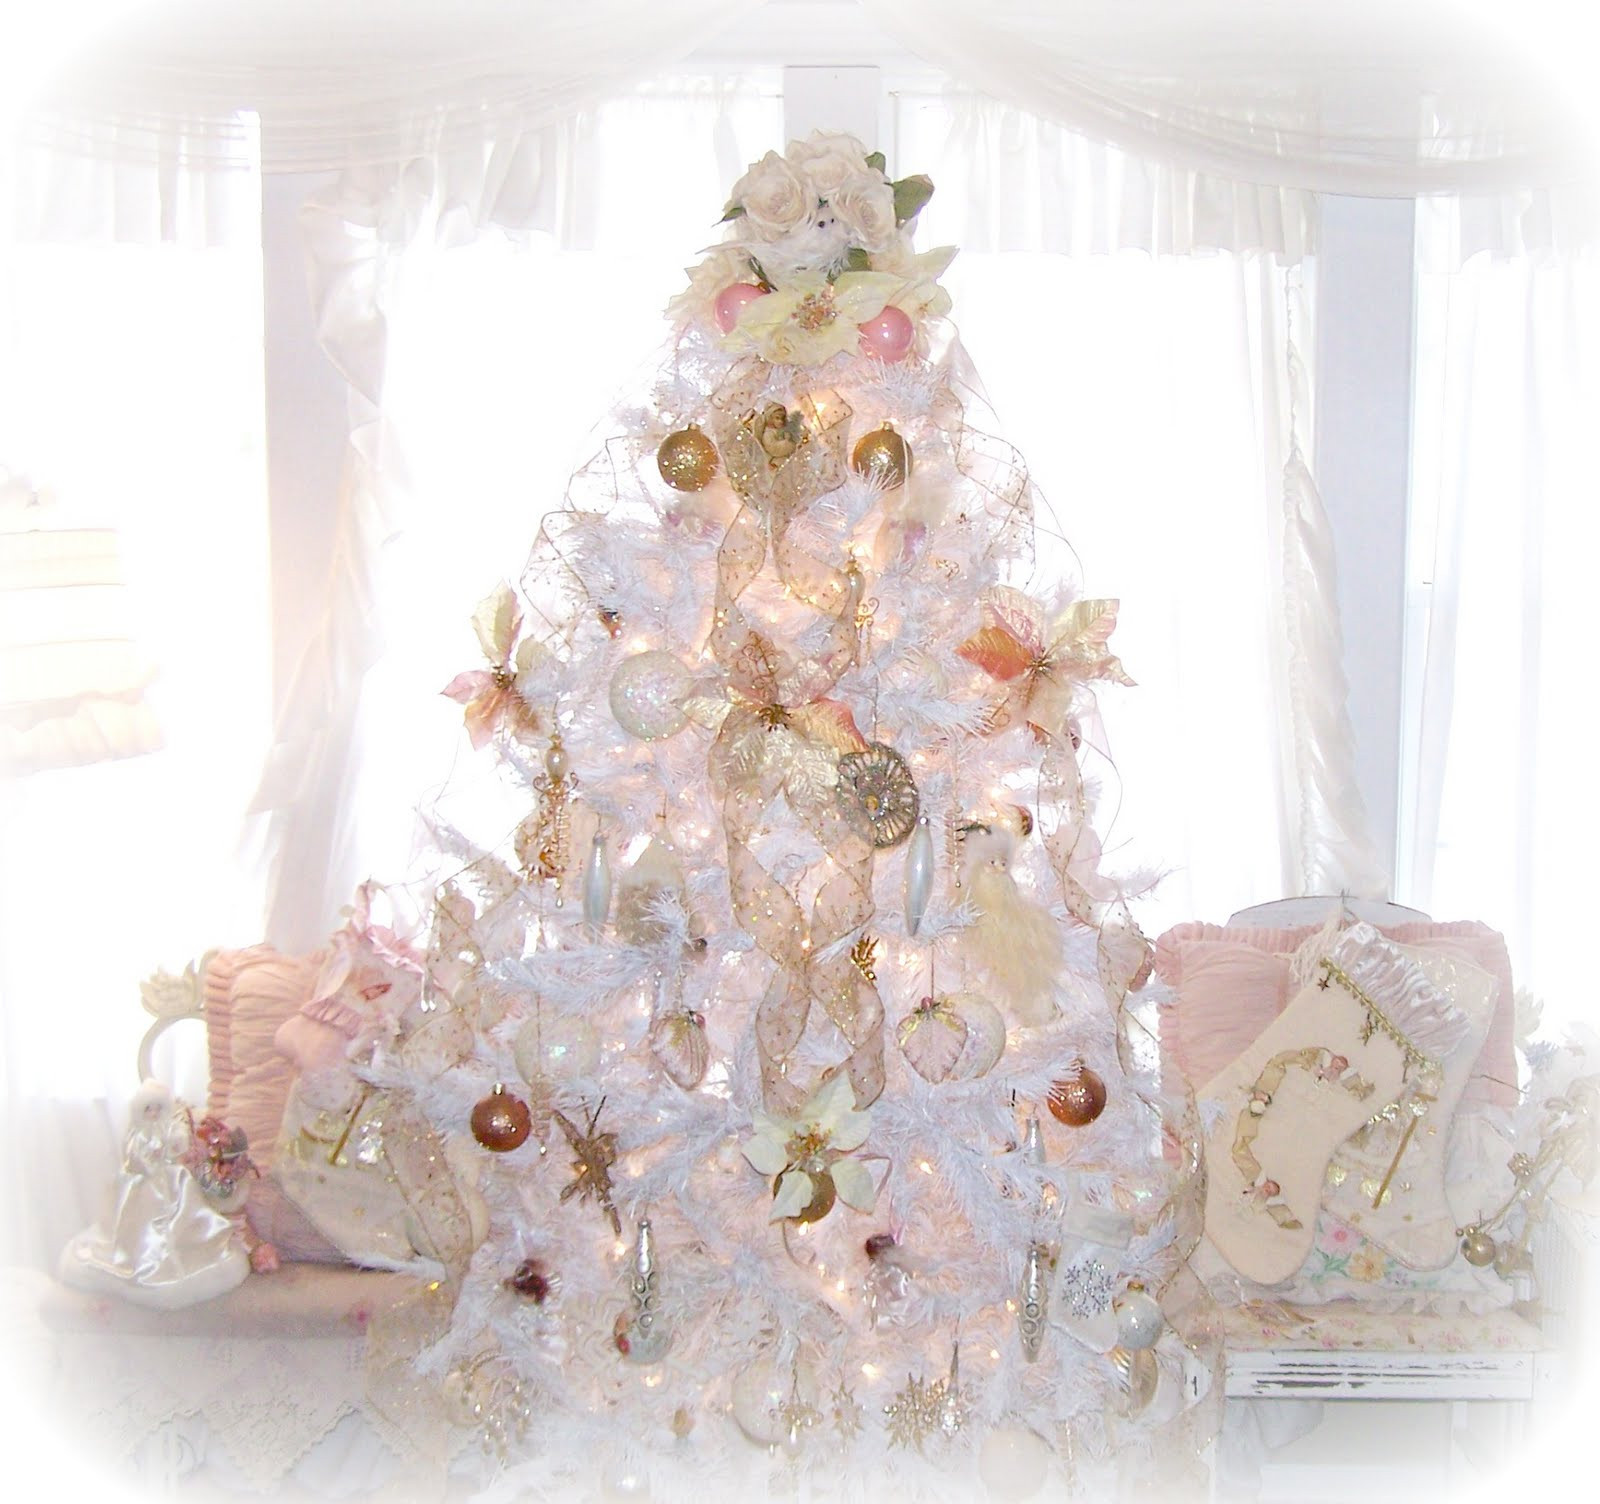 Shabby Chic Christmas Tree
 Olivia s Romantic Home Shabby Chic White Christmas Tree